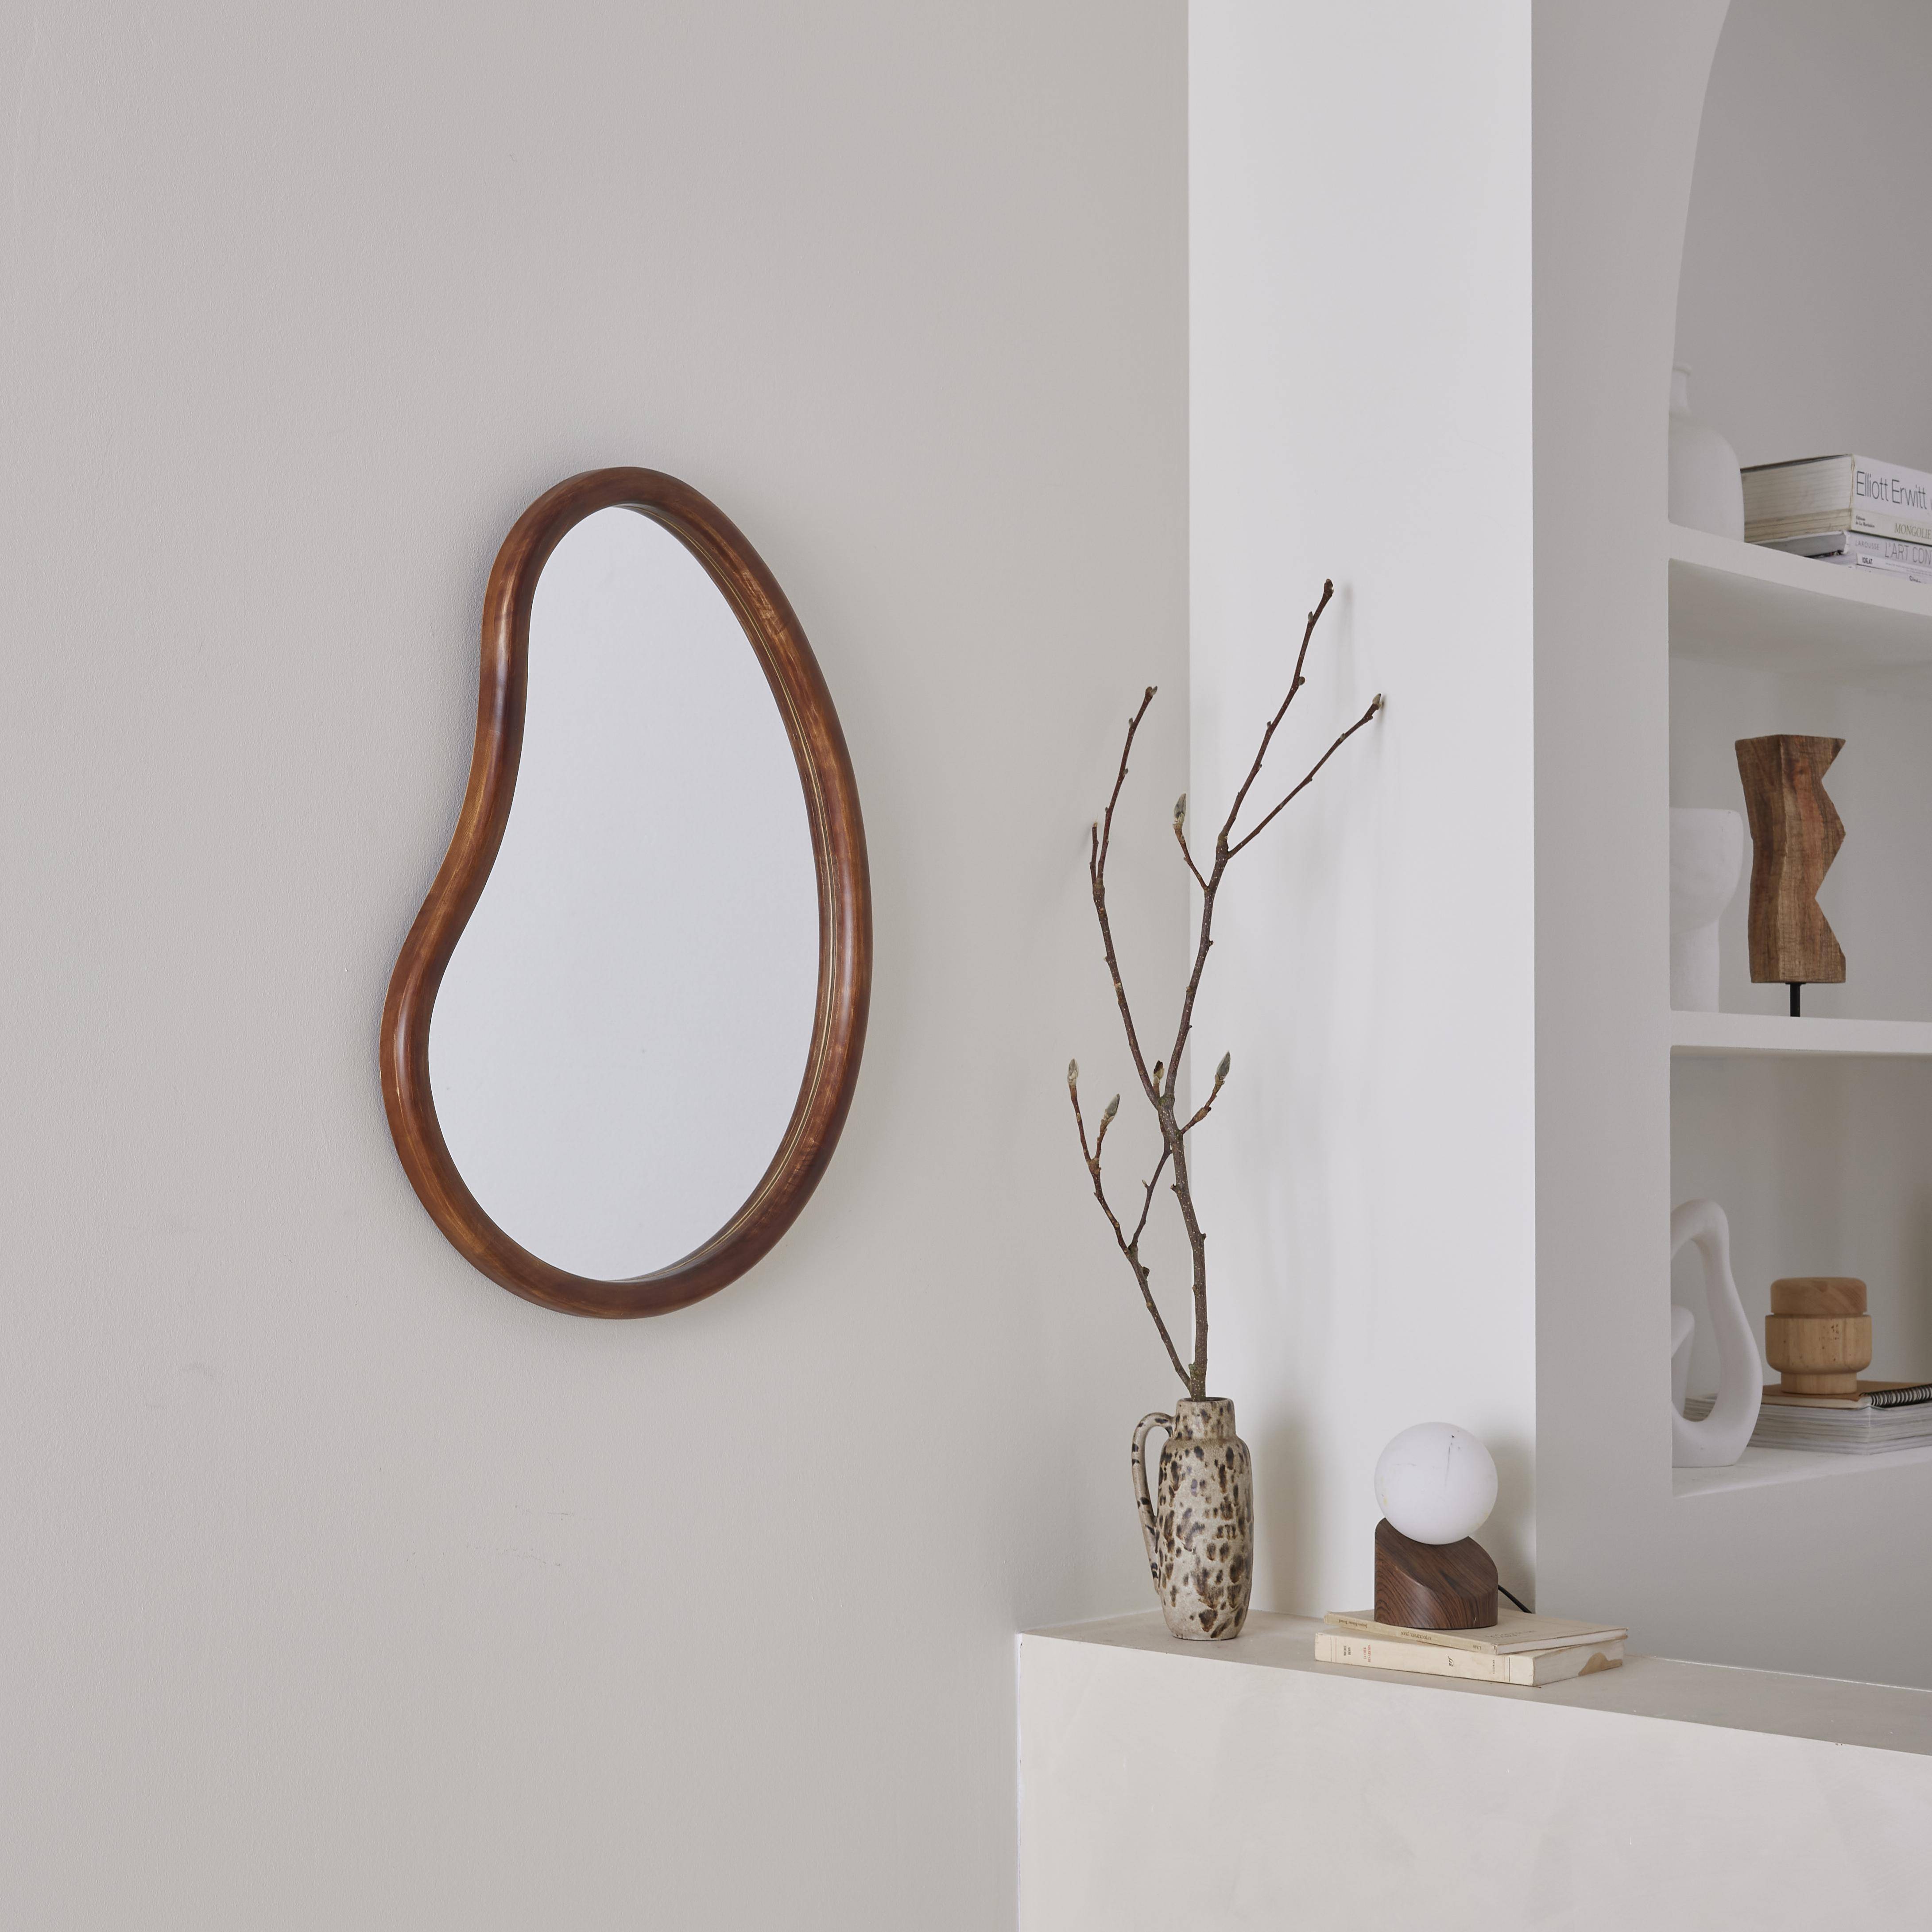 Organischer Spiegel aus Tannenholz 65cm, 3cm dick, nussbaumfarben, ideal für Eingang, Schlafzimmer oder Badezimmer. Photo1